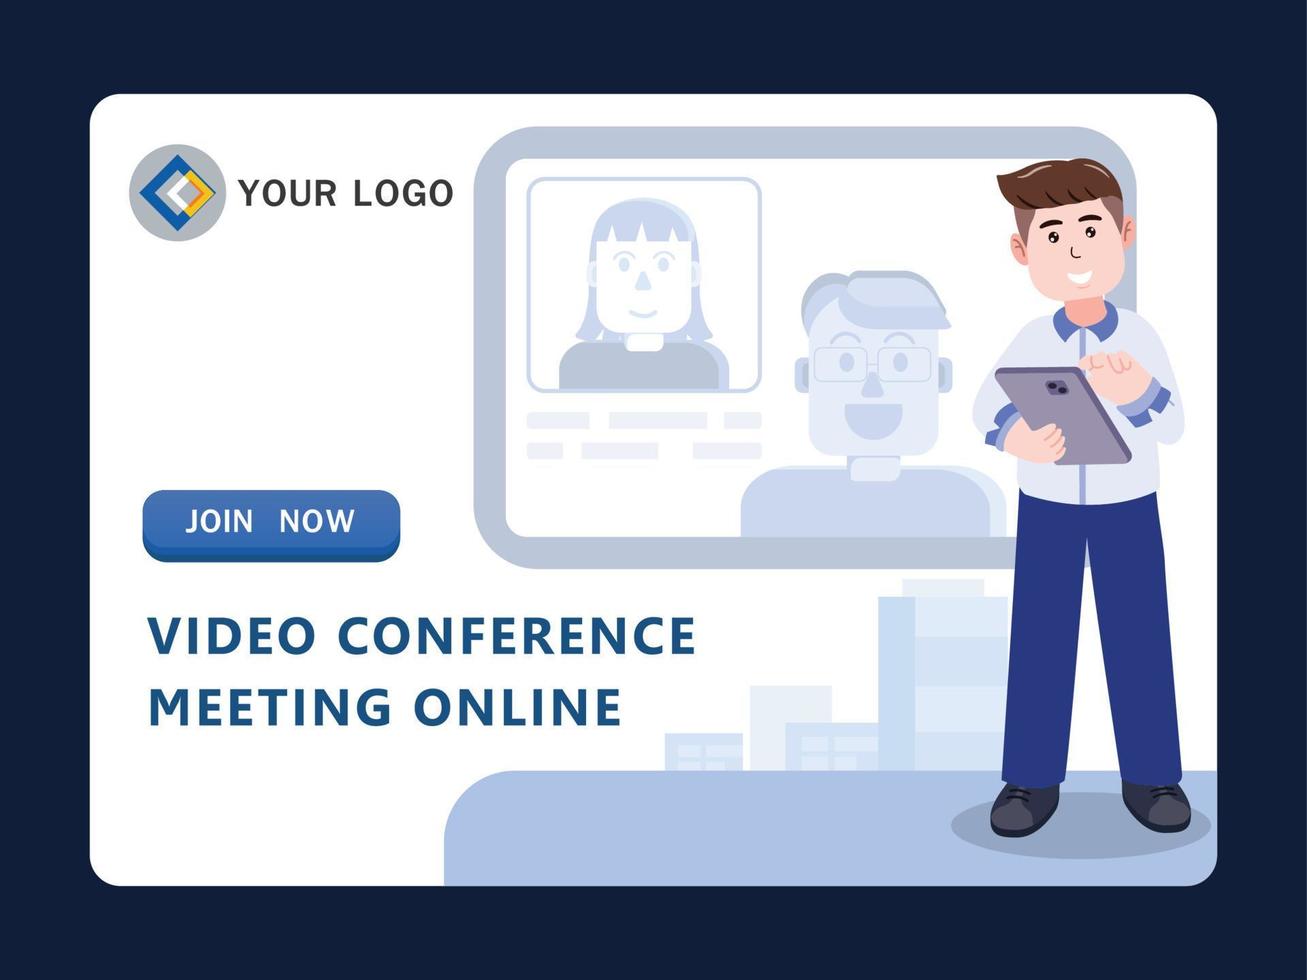 riunione di videoconferenza aziendale online, comunicazione, illustrazione vettoriale del personaggio dei cartoni animati.